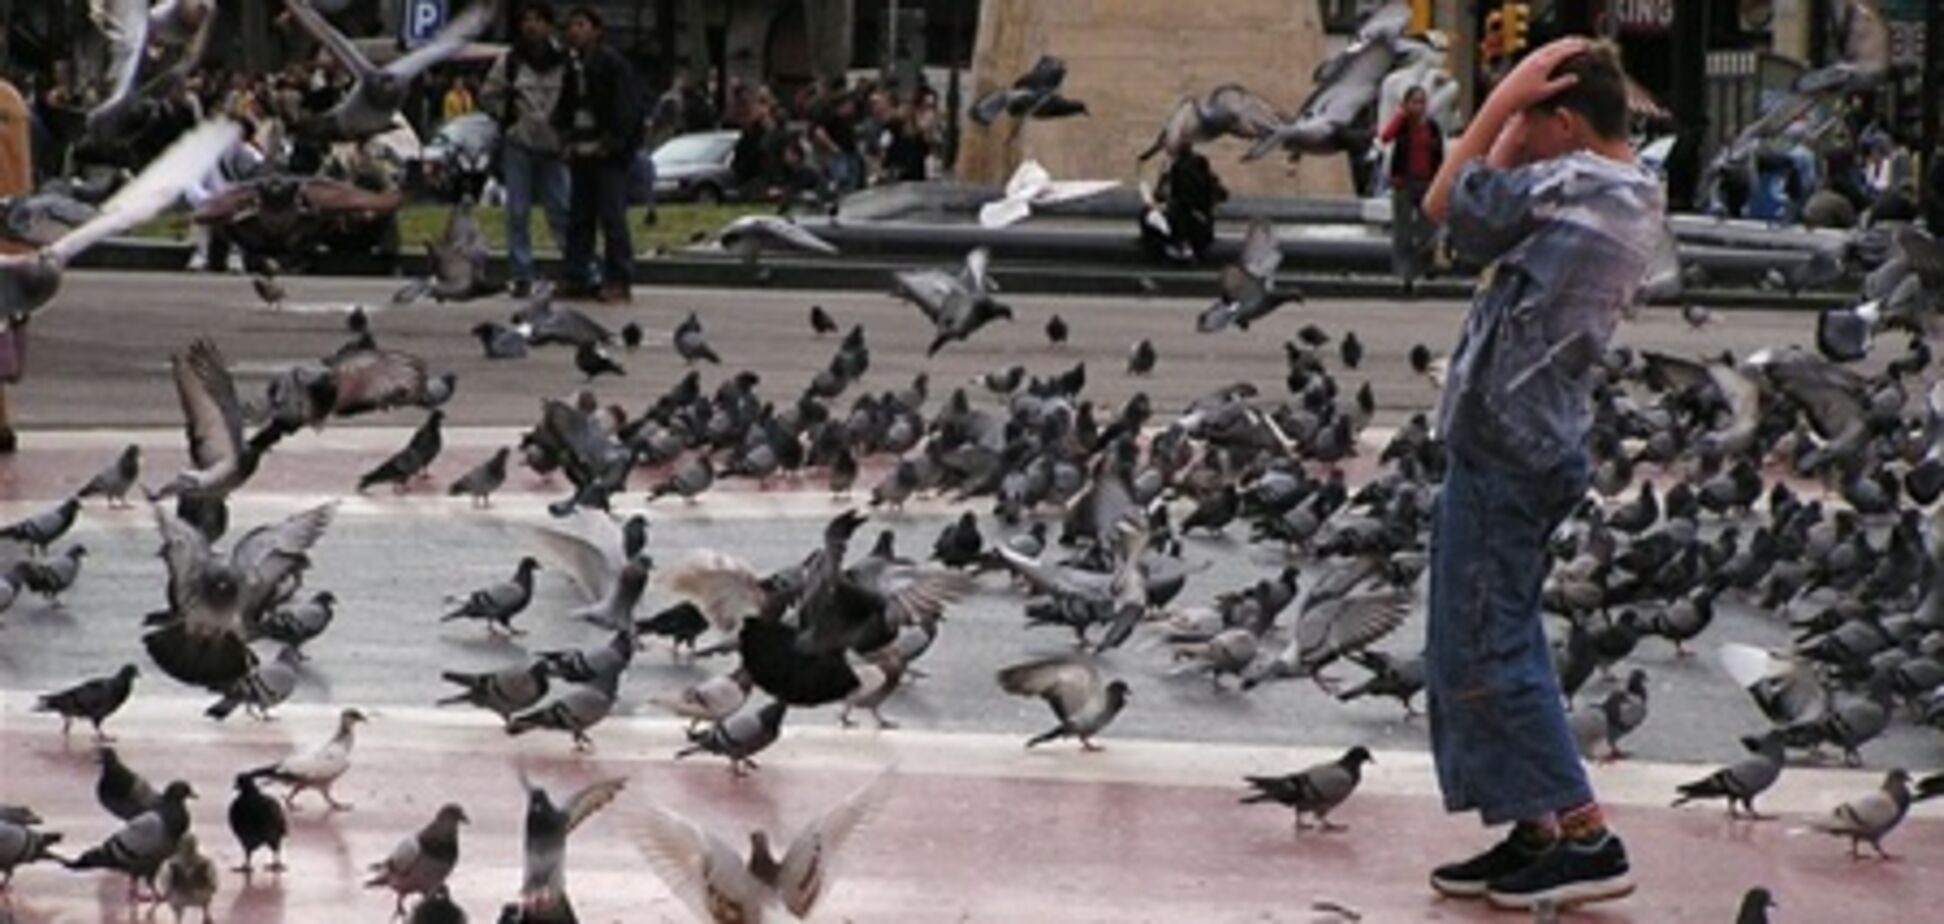 Мадрид наводнили голуби и термиты